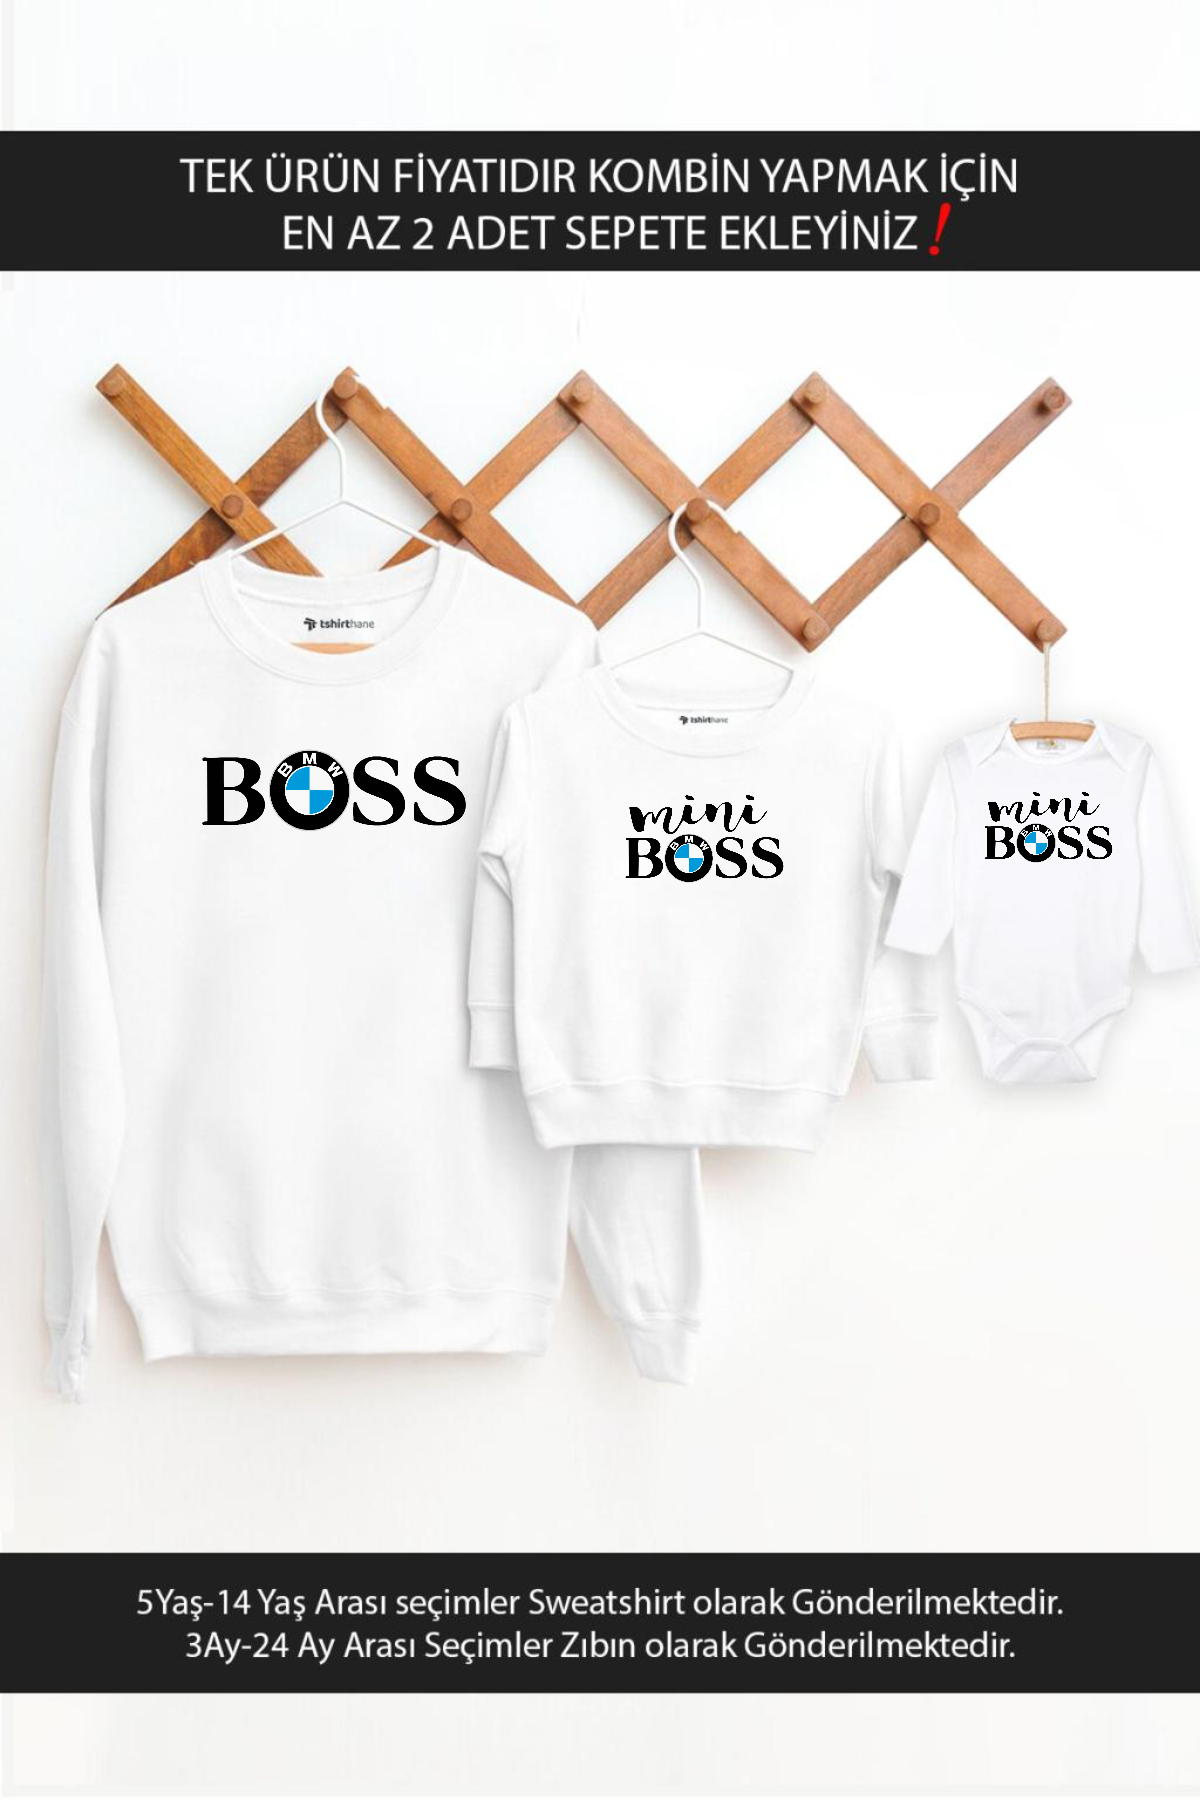 Boss Mini Boss Bmw Baba Oğul Kız (TEK ÜRÜN FİYATIDIR KOMBİN İÇİN EN AZ 2 ADET SEPETE EKLEYİNİZ)